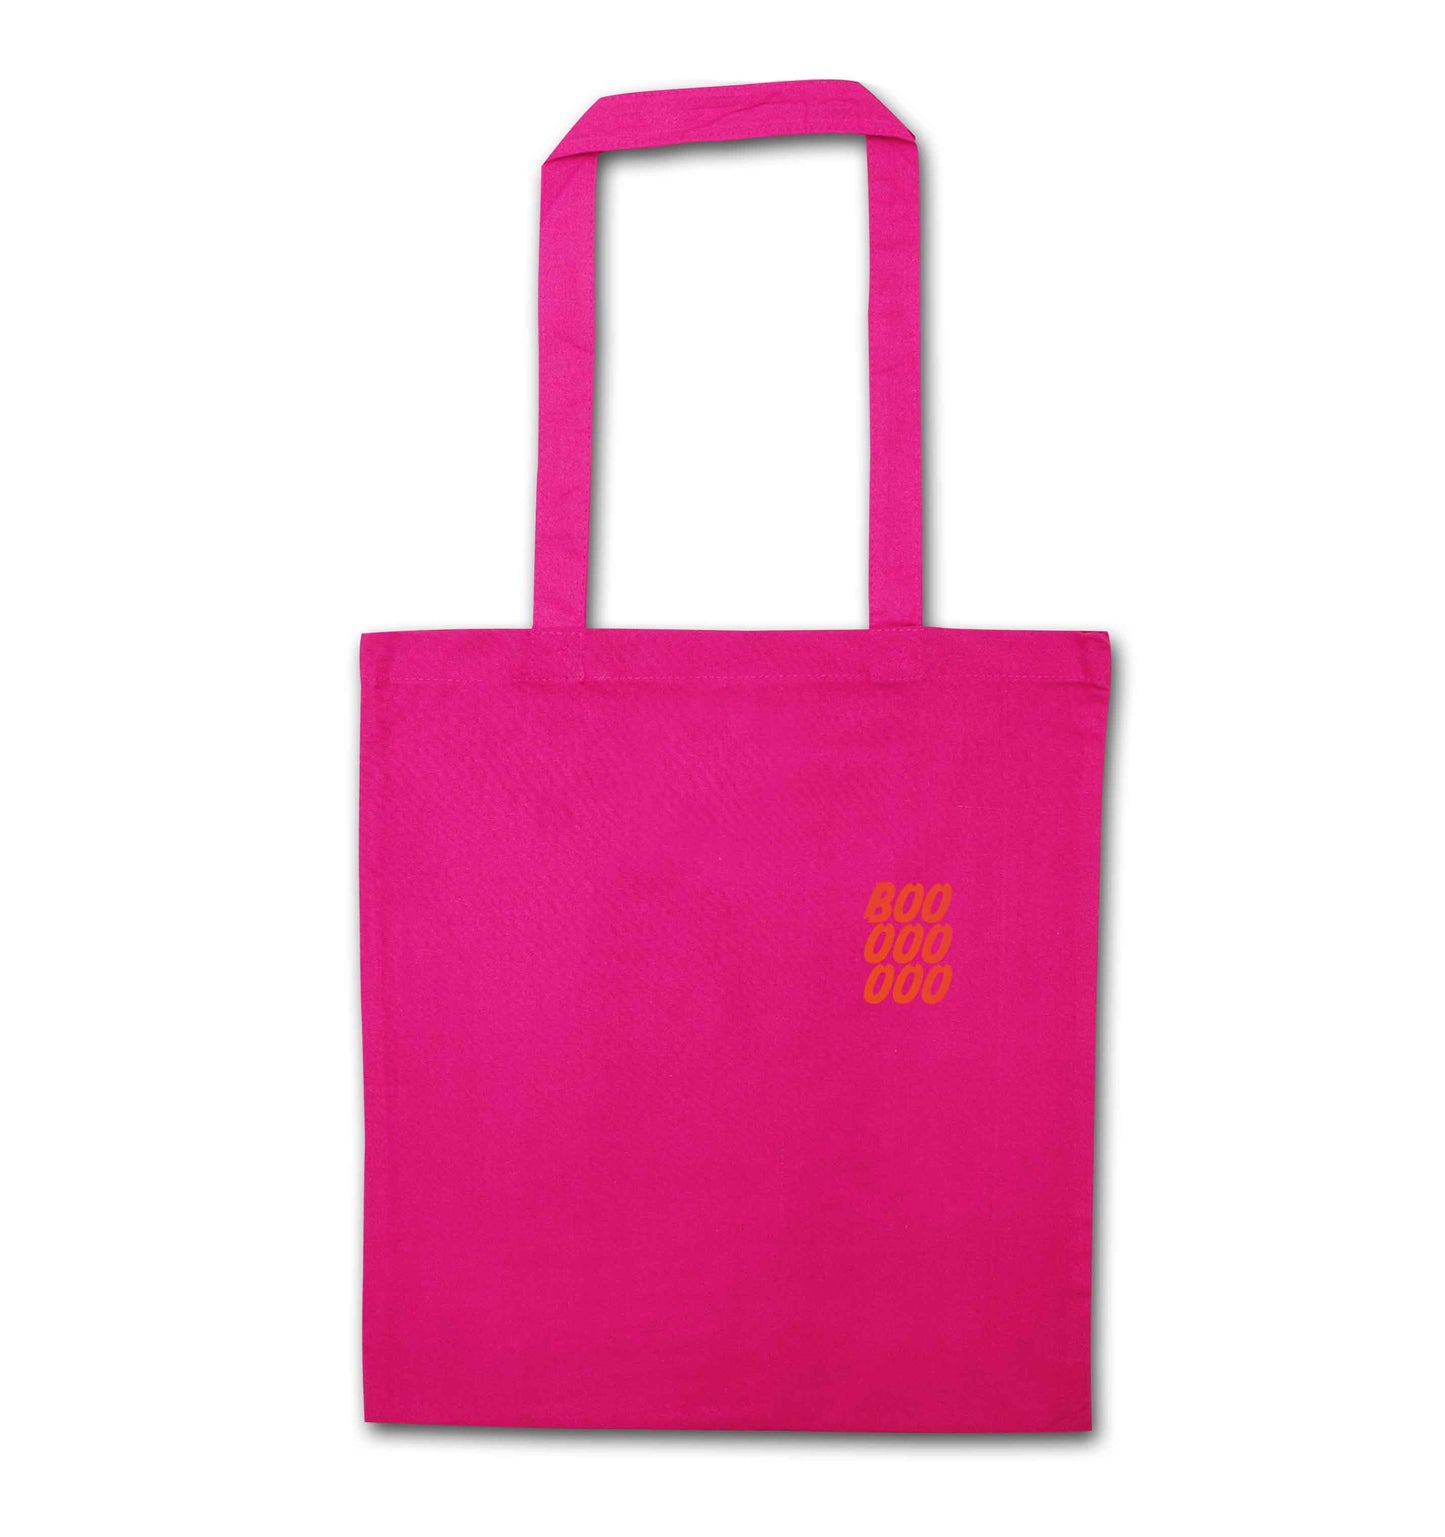 Boo pocket pink tote bag